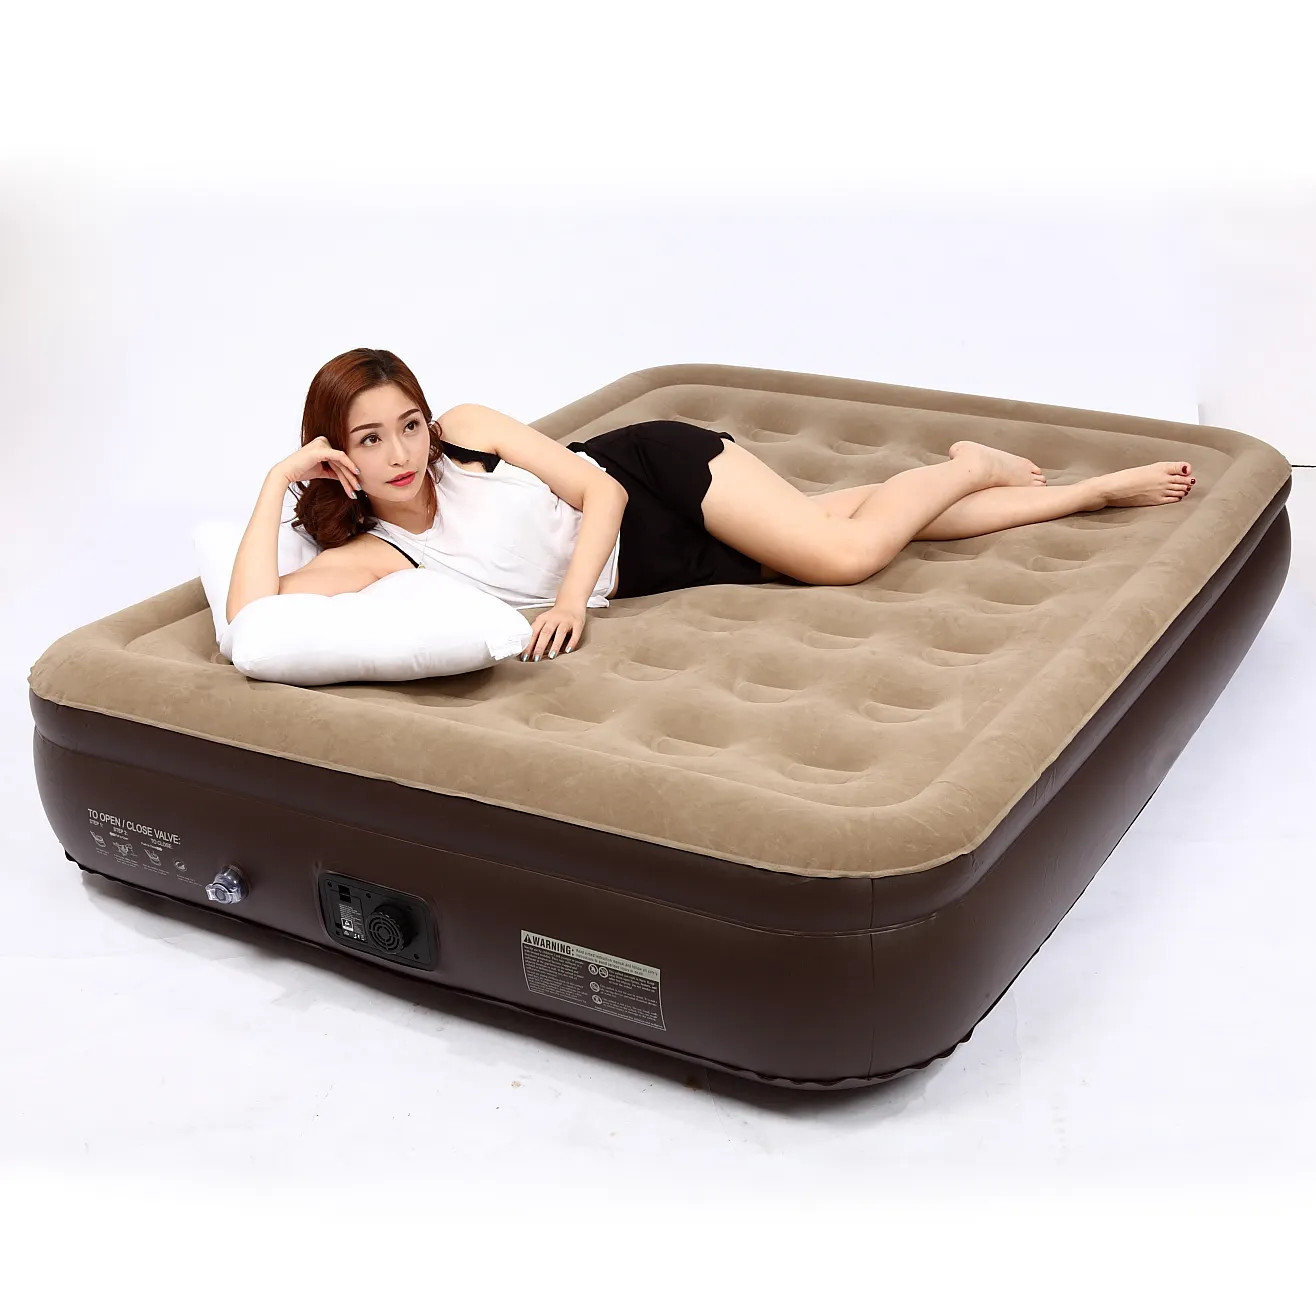 Pompa kamp şişme hava yatağı ile sıcak satış hava yatağı yatak